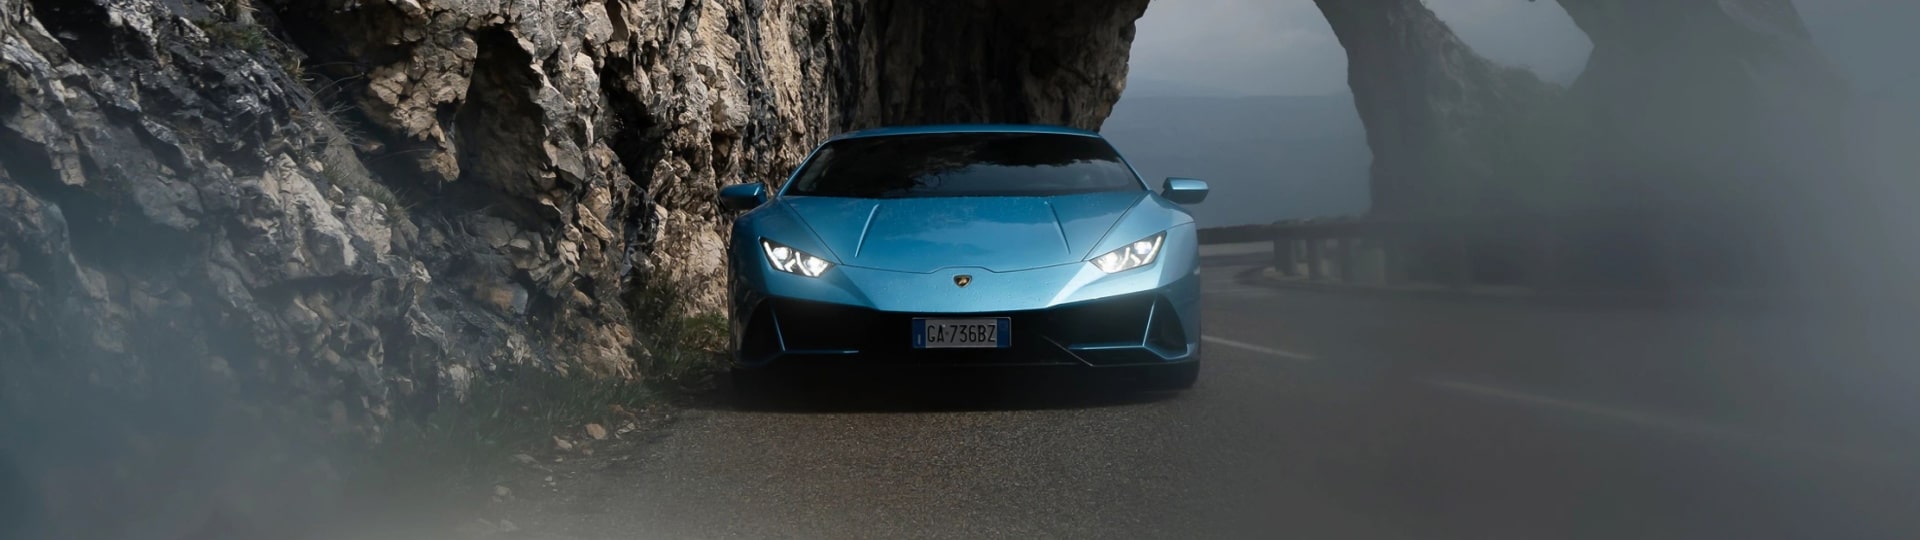 Lamborghini zvýšilo zisk i tržby